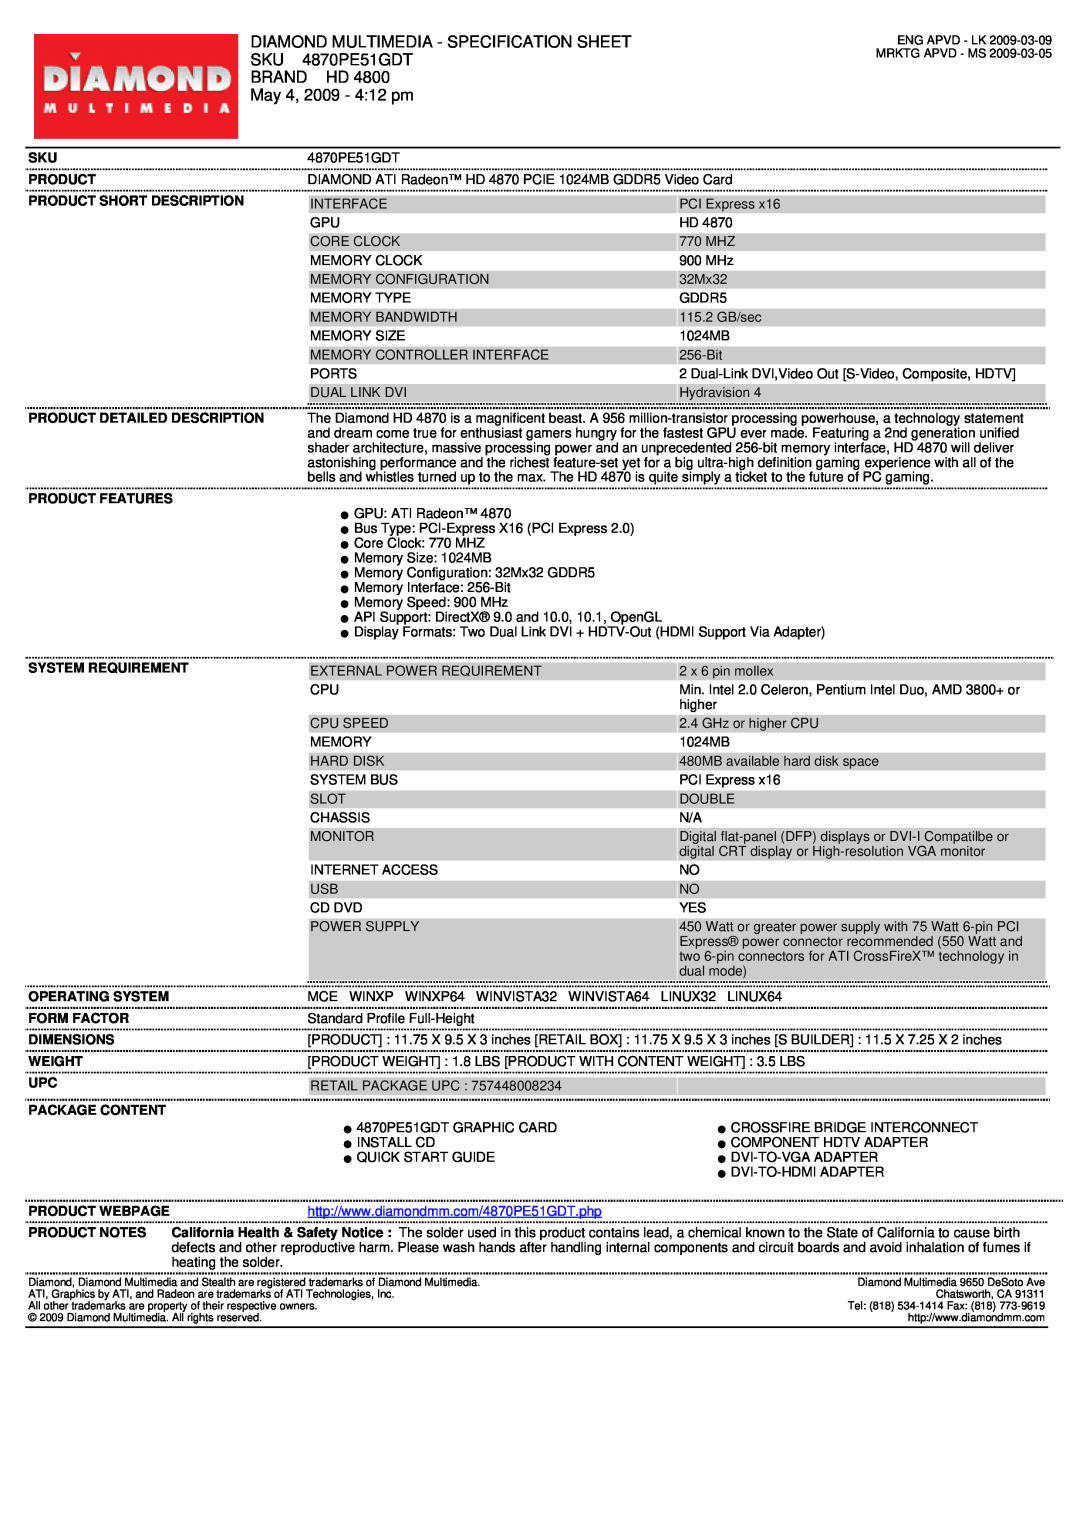 Diamond Multimedia SKU 4870PE51GDT specifications Diamond Multimedia - Specification Sheet, Brand Hd, May 4, 2009 - 412 pm 